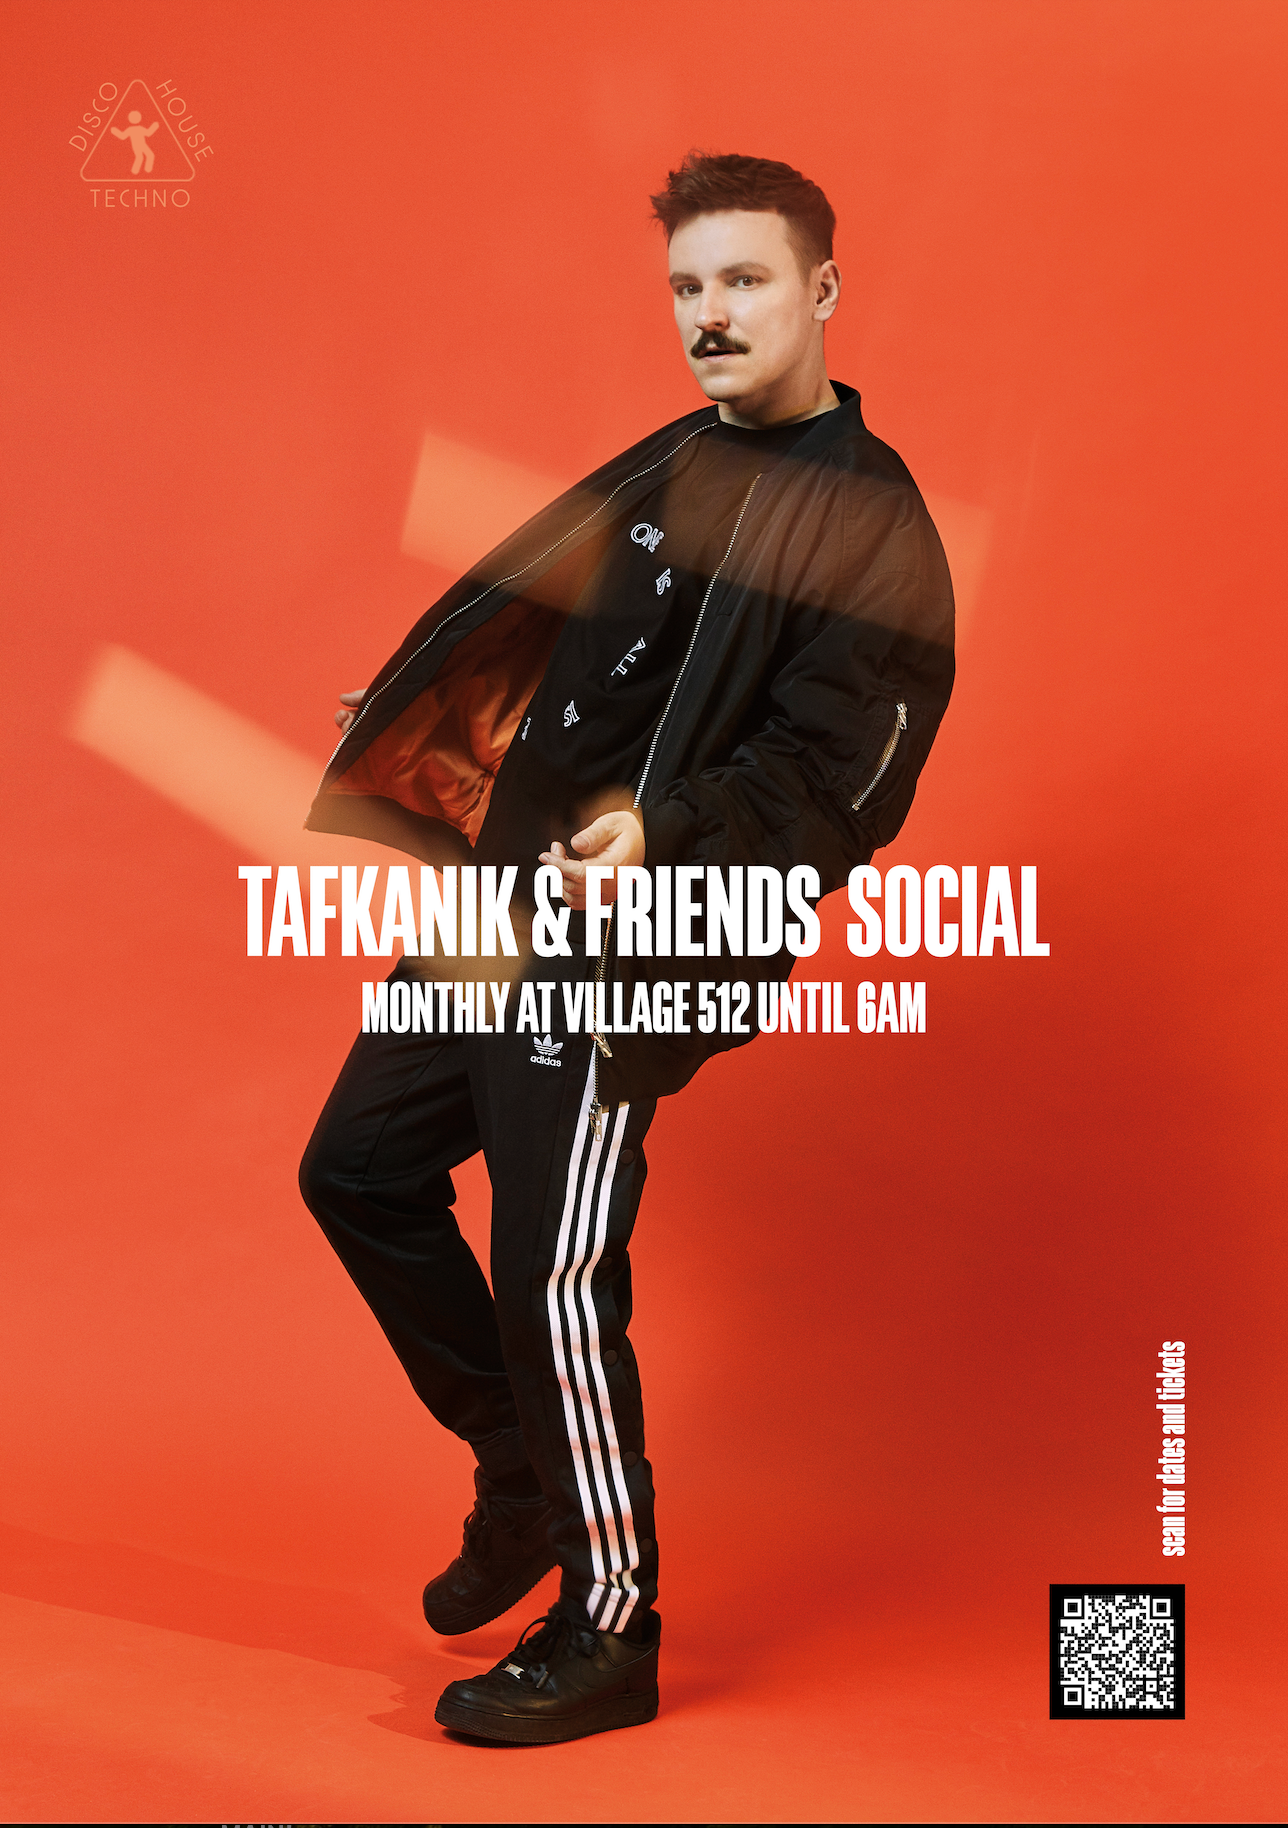 Tafkanik & friends LGBTQ+ April social - Página frontal